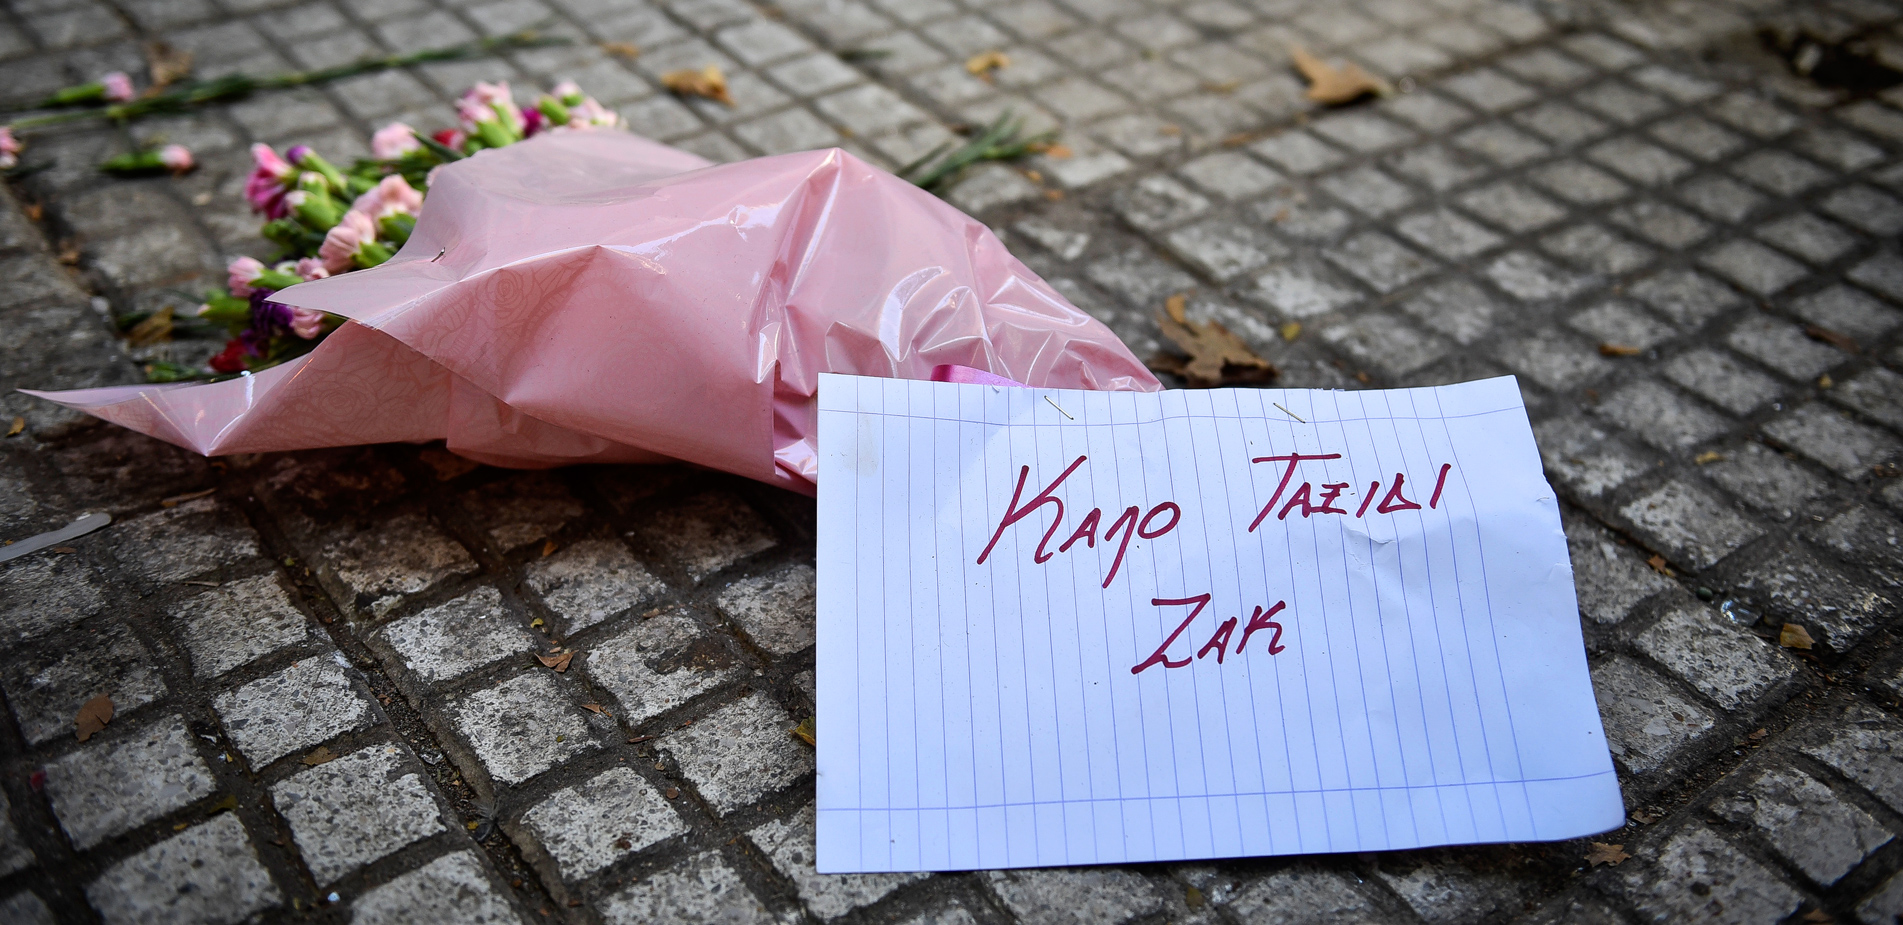 Ζακ Κωστόπουλος: Τα τρία χρόνια από τη δολοφονία, η δίκη που εκκρεμεί και η δικαίωση που δεν έχει έρθει